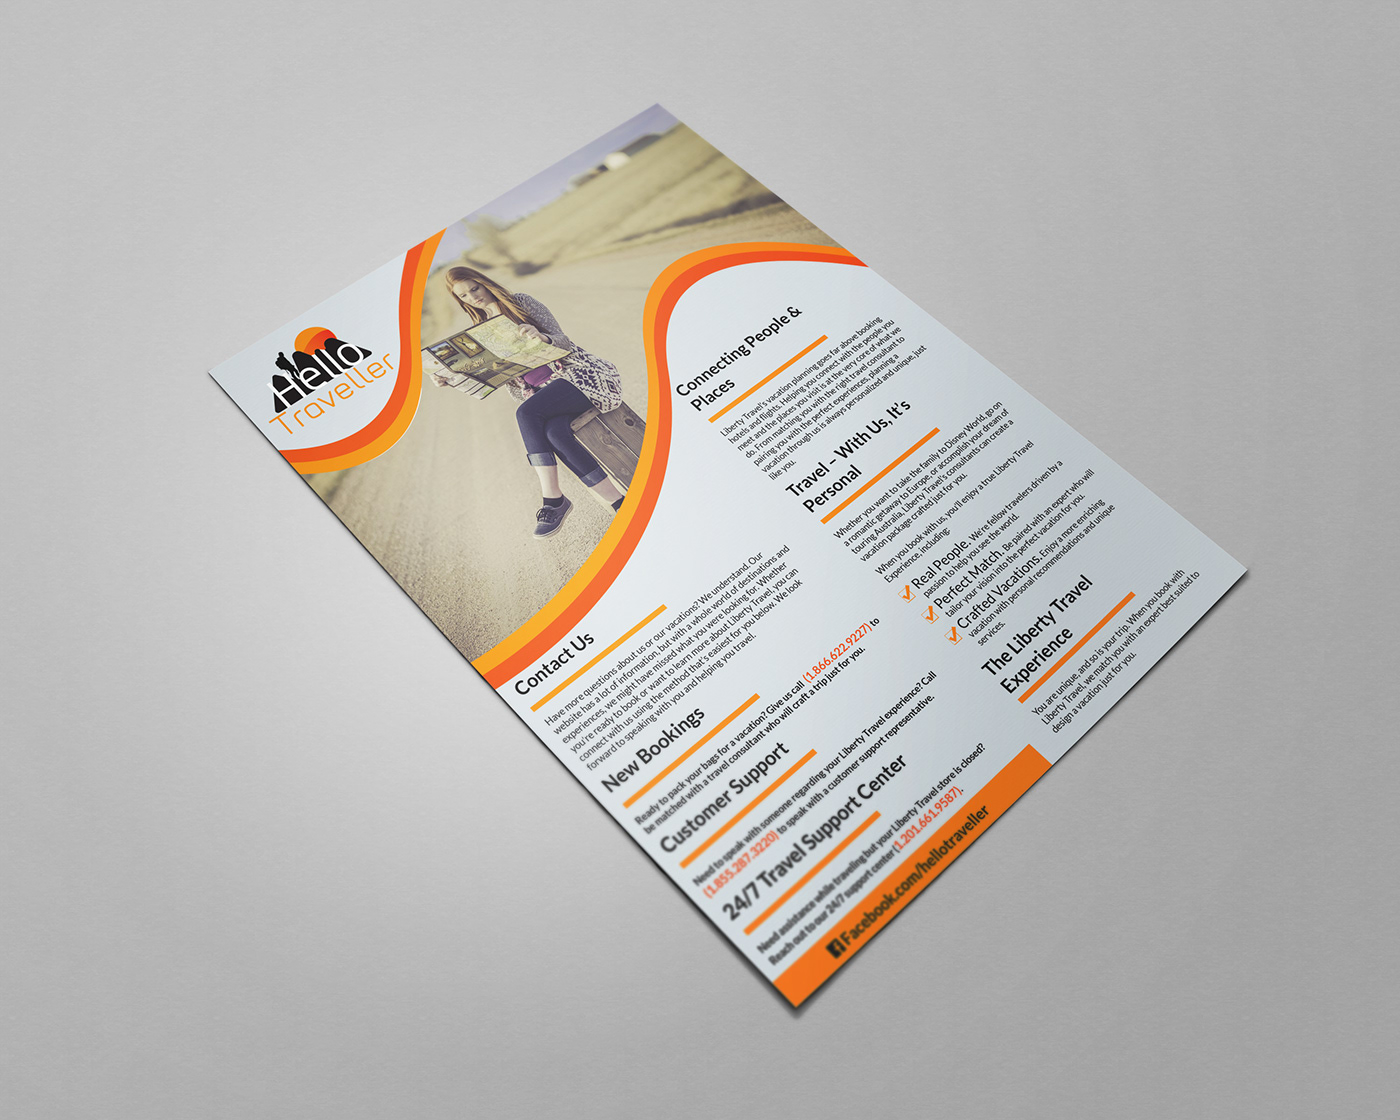 trifold brochure Real steate Flyer realtor flyer Travel Agensi Flyer business flyer #behance #graphicdesign #dribbble #design #branding #logo #illustration #vector #designer #graphic #ui #webdesign #ux #illustrator #logodesigner